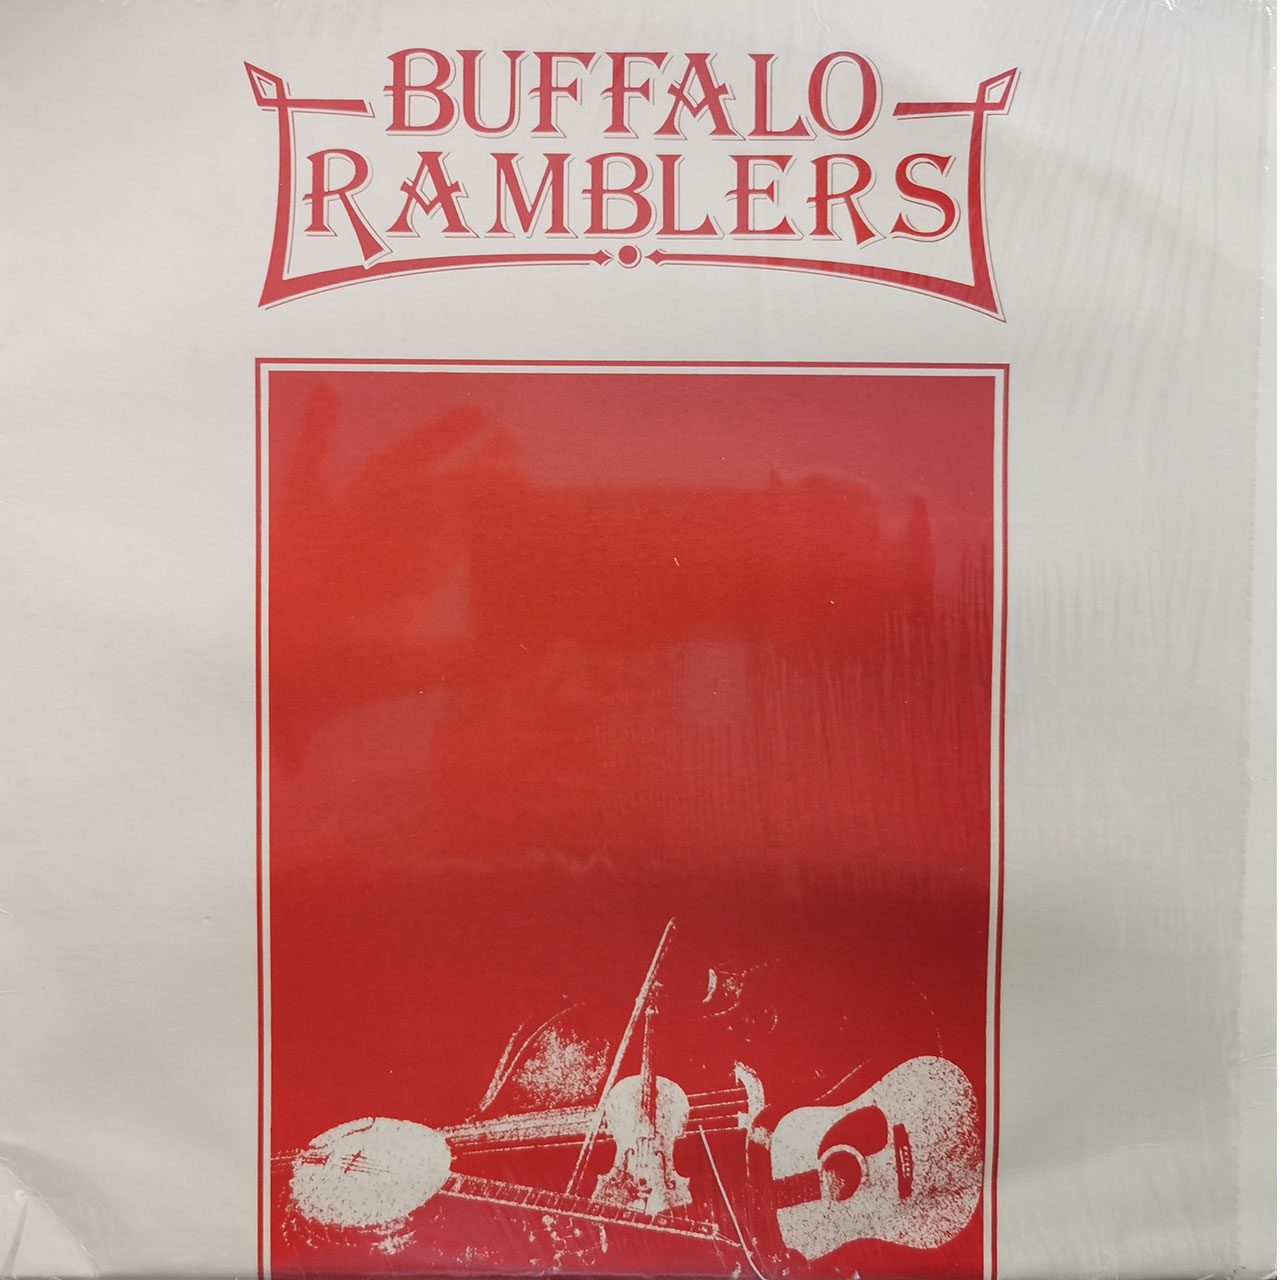 Buffalo Ramblers - Buffalo Ramblers cover album